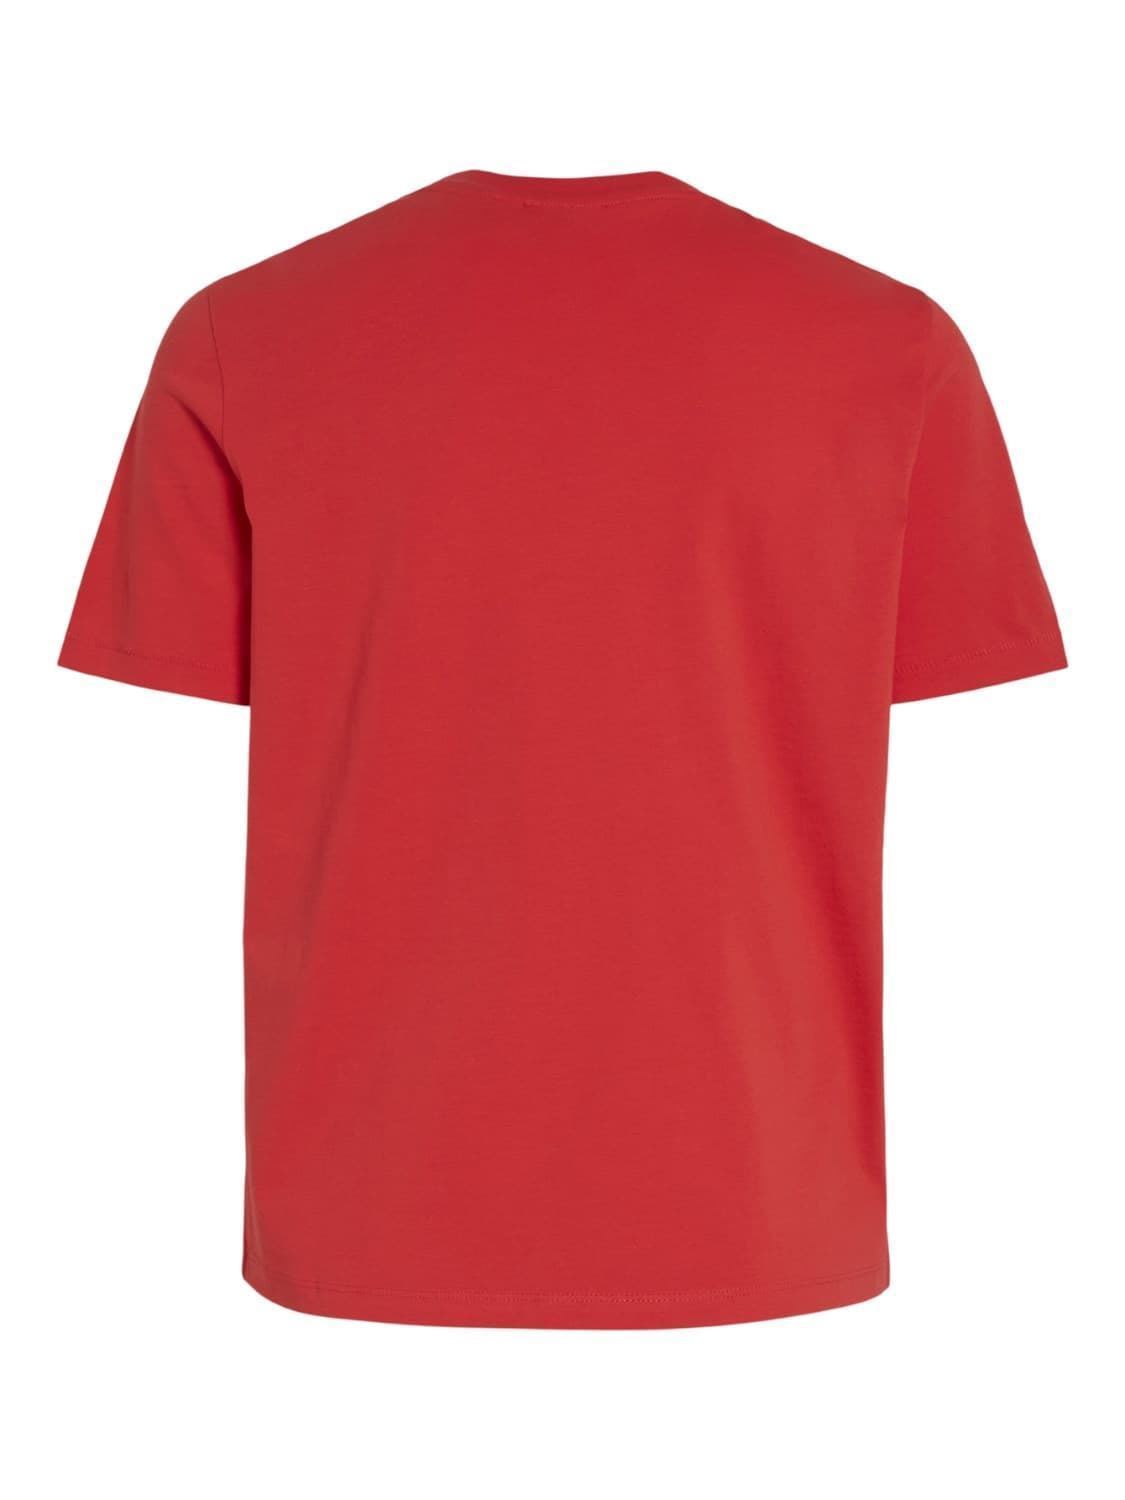 Camiseta crochet visybil rojo - Imagen 5